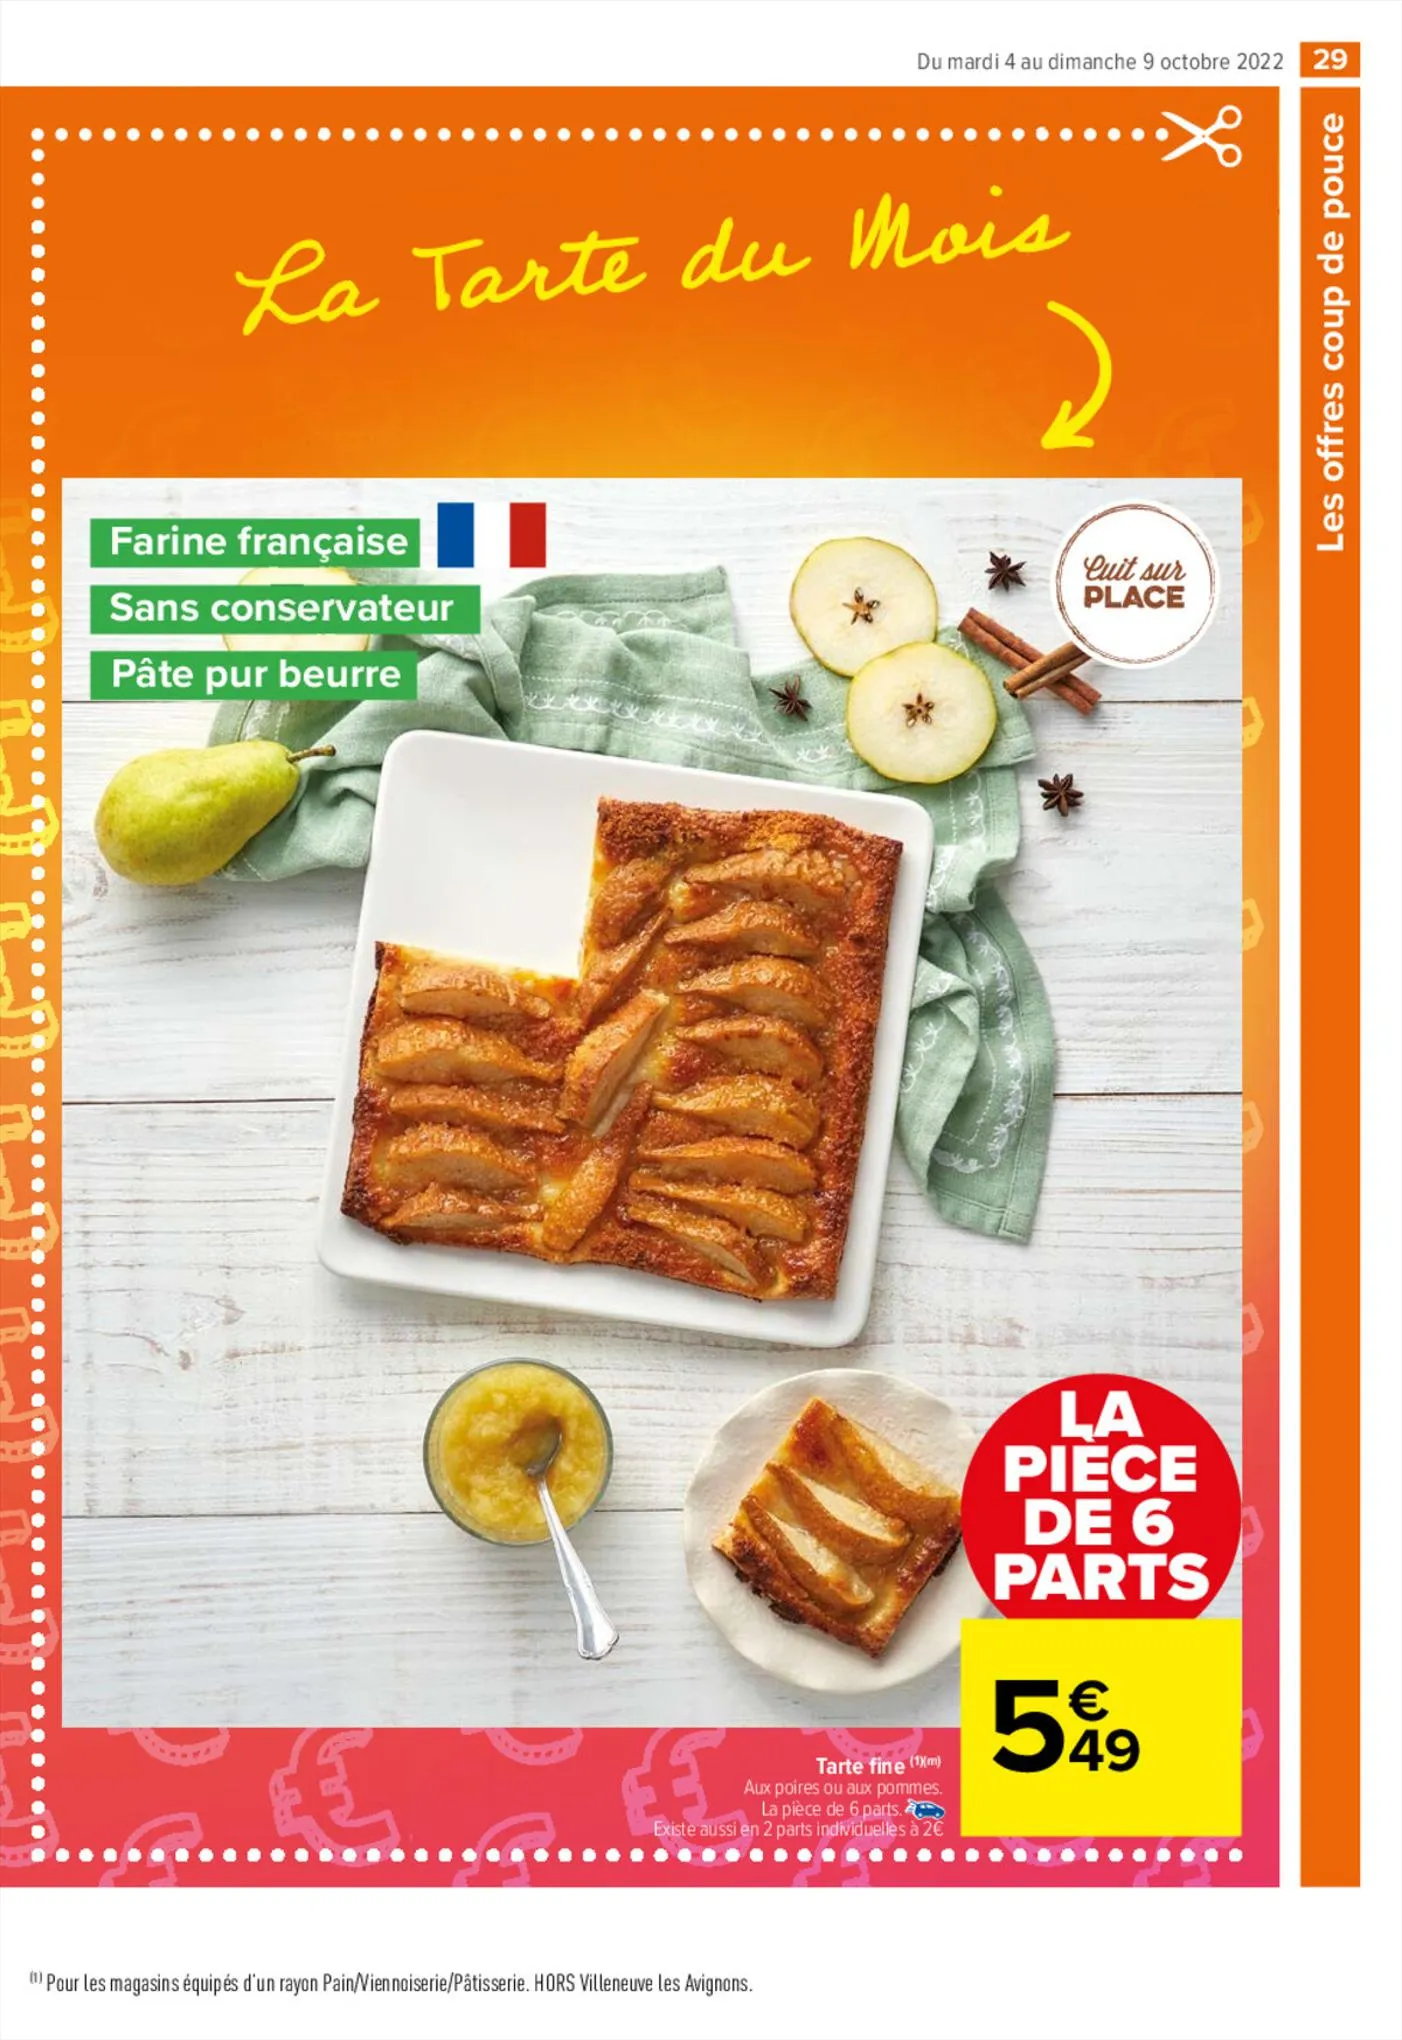 Catalogue Les promos coup de pouce !, page 00031